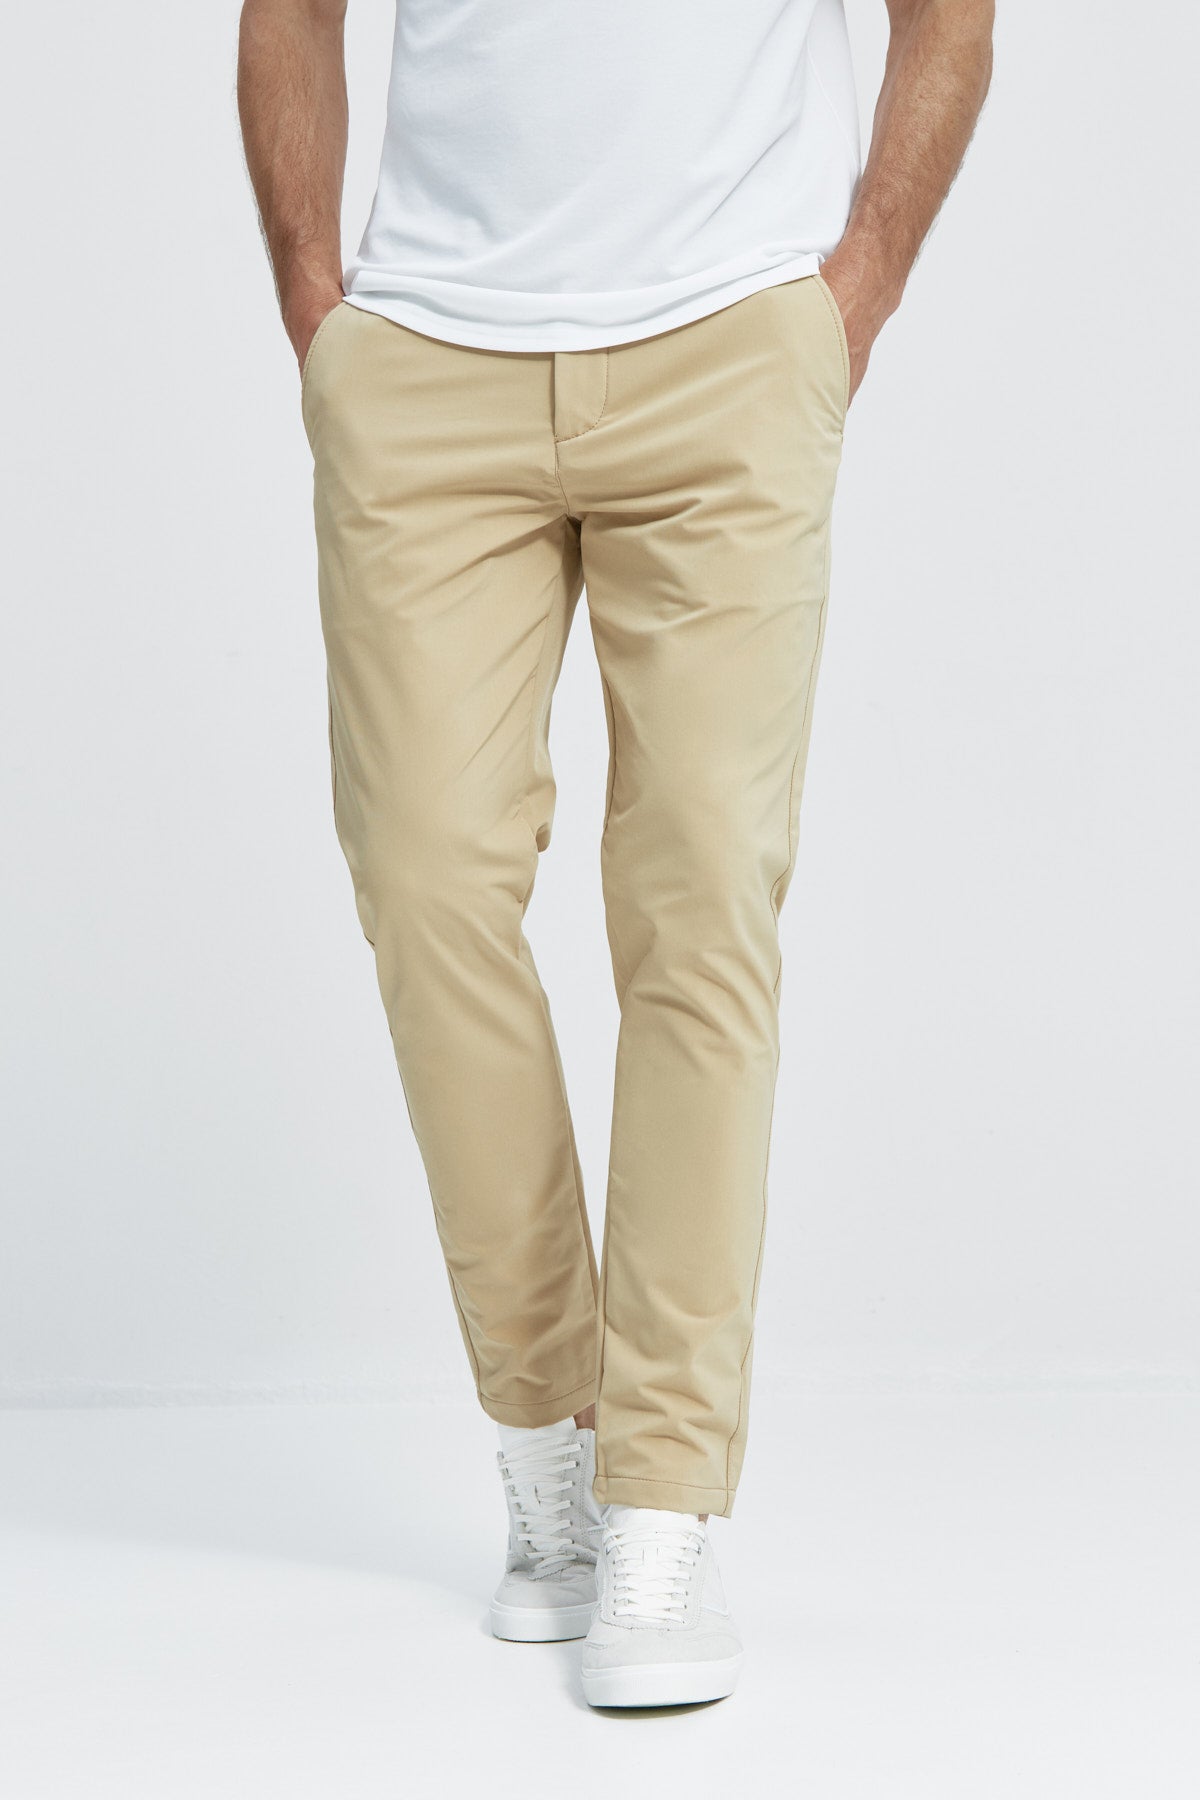 Pantalón para hombre beige: Pantalón chino slim beige para hombre con tecnología termorreguladora Coolmax. Foto de frente.